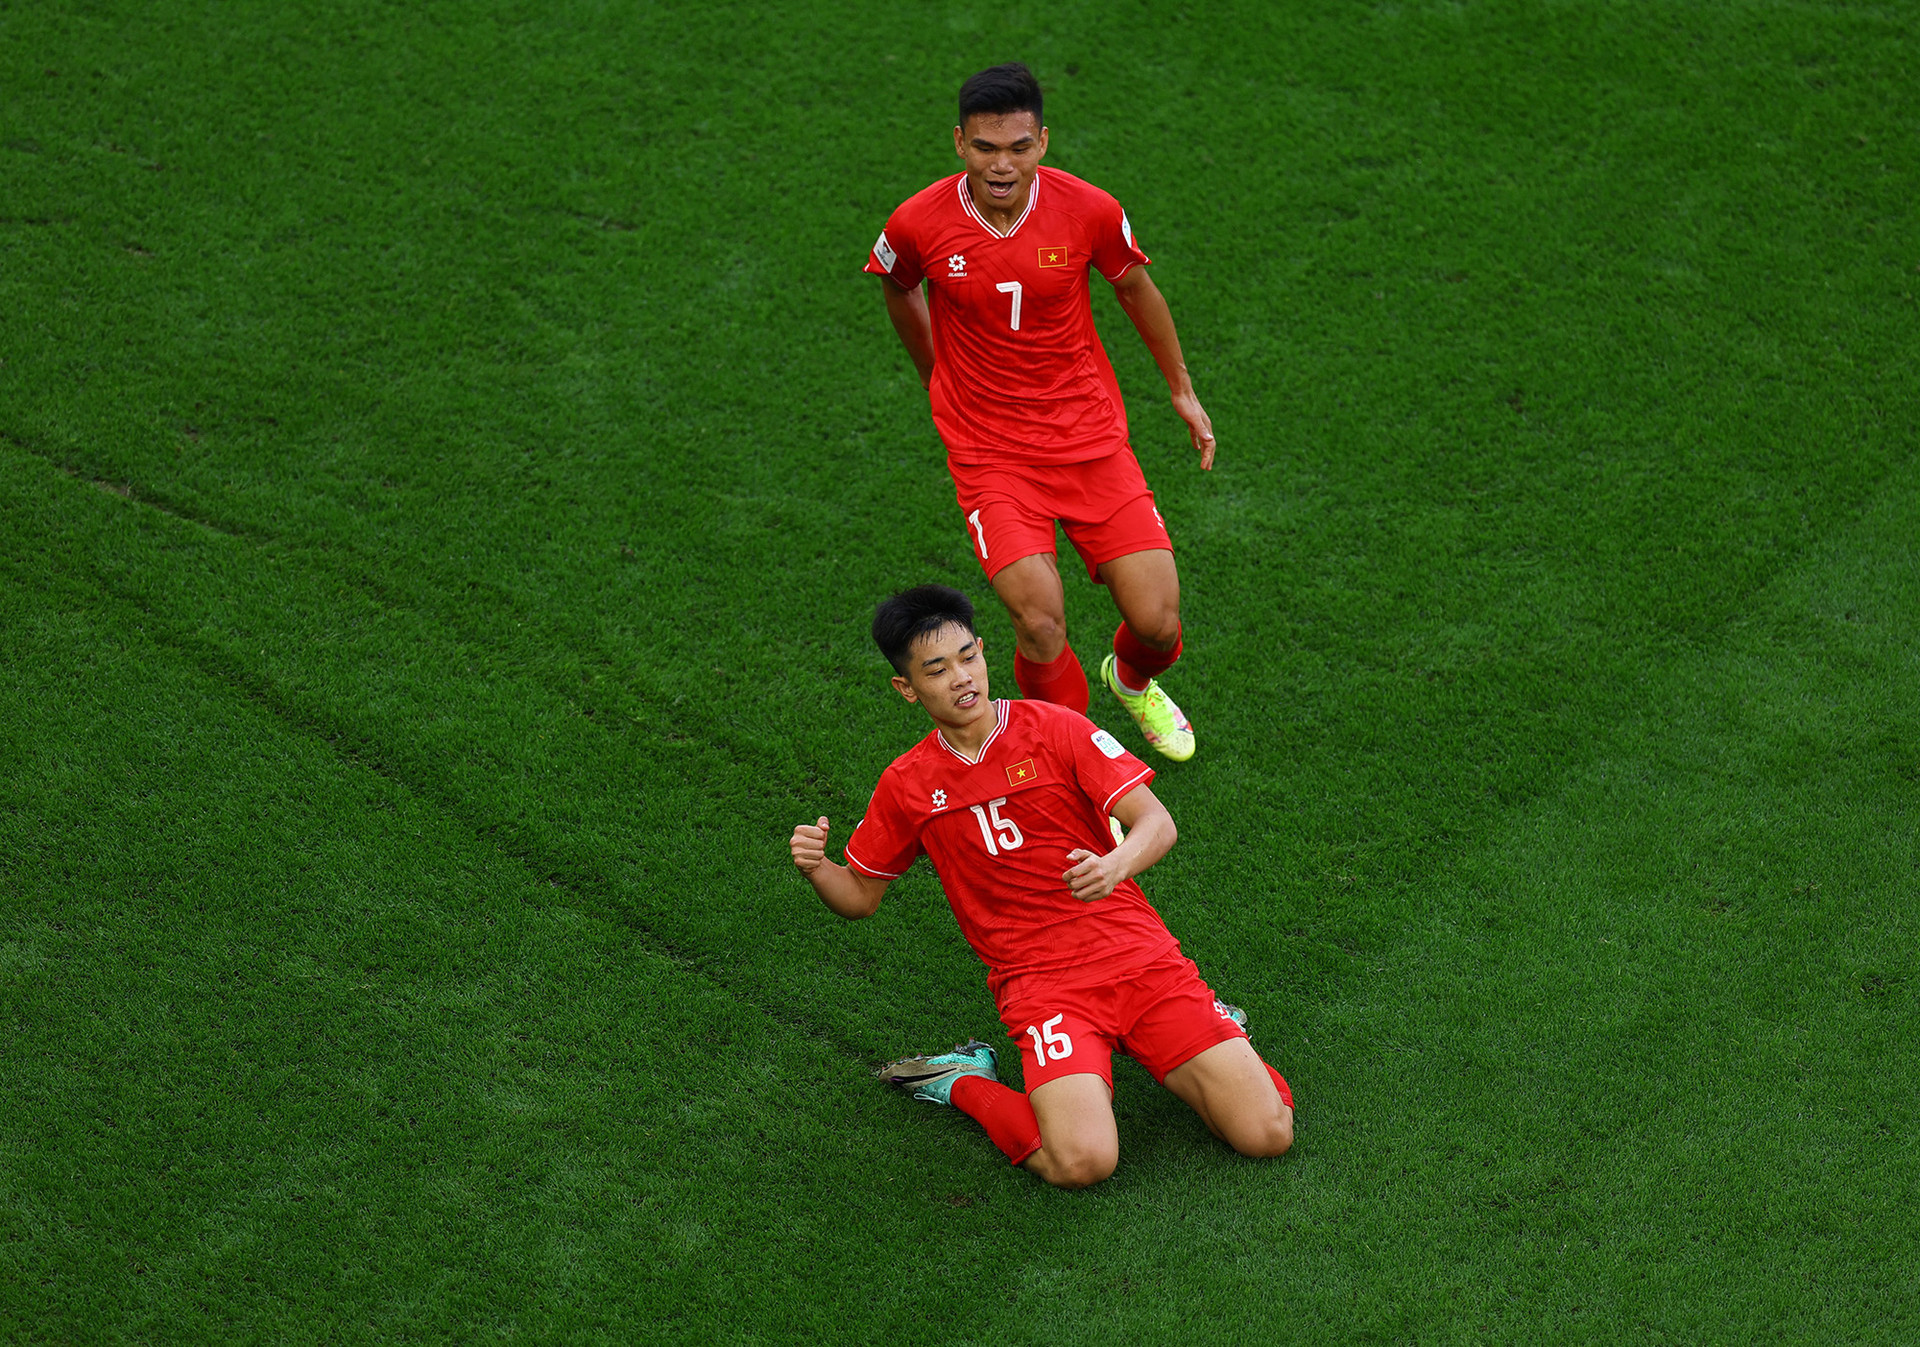 Tiền đạo Nguyễn Đình Bắc (15) ghi bàn gỡ hòa 1-1 cho đội tuyển Việt Nam ở trận gặp Nhật Bản - Ảnh: REUTERS